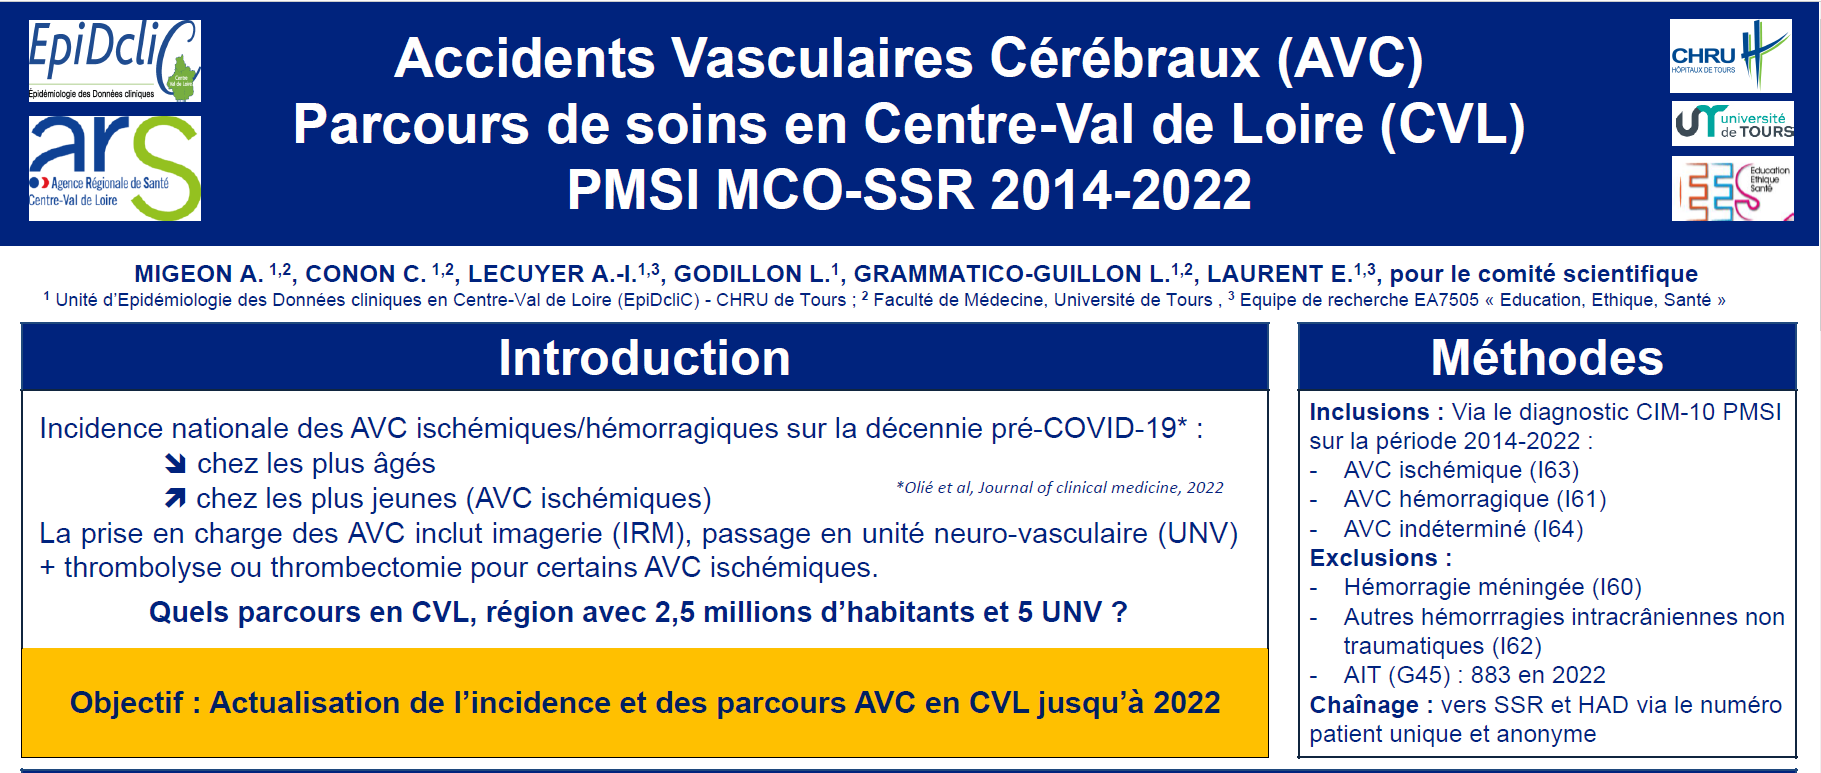 Parcours de soins des AVC, Centre–Val de Loire (CVL) 2014-2022